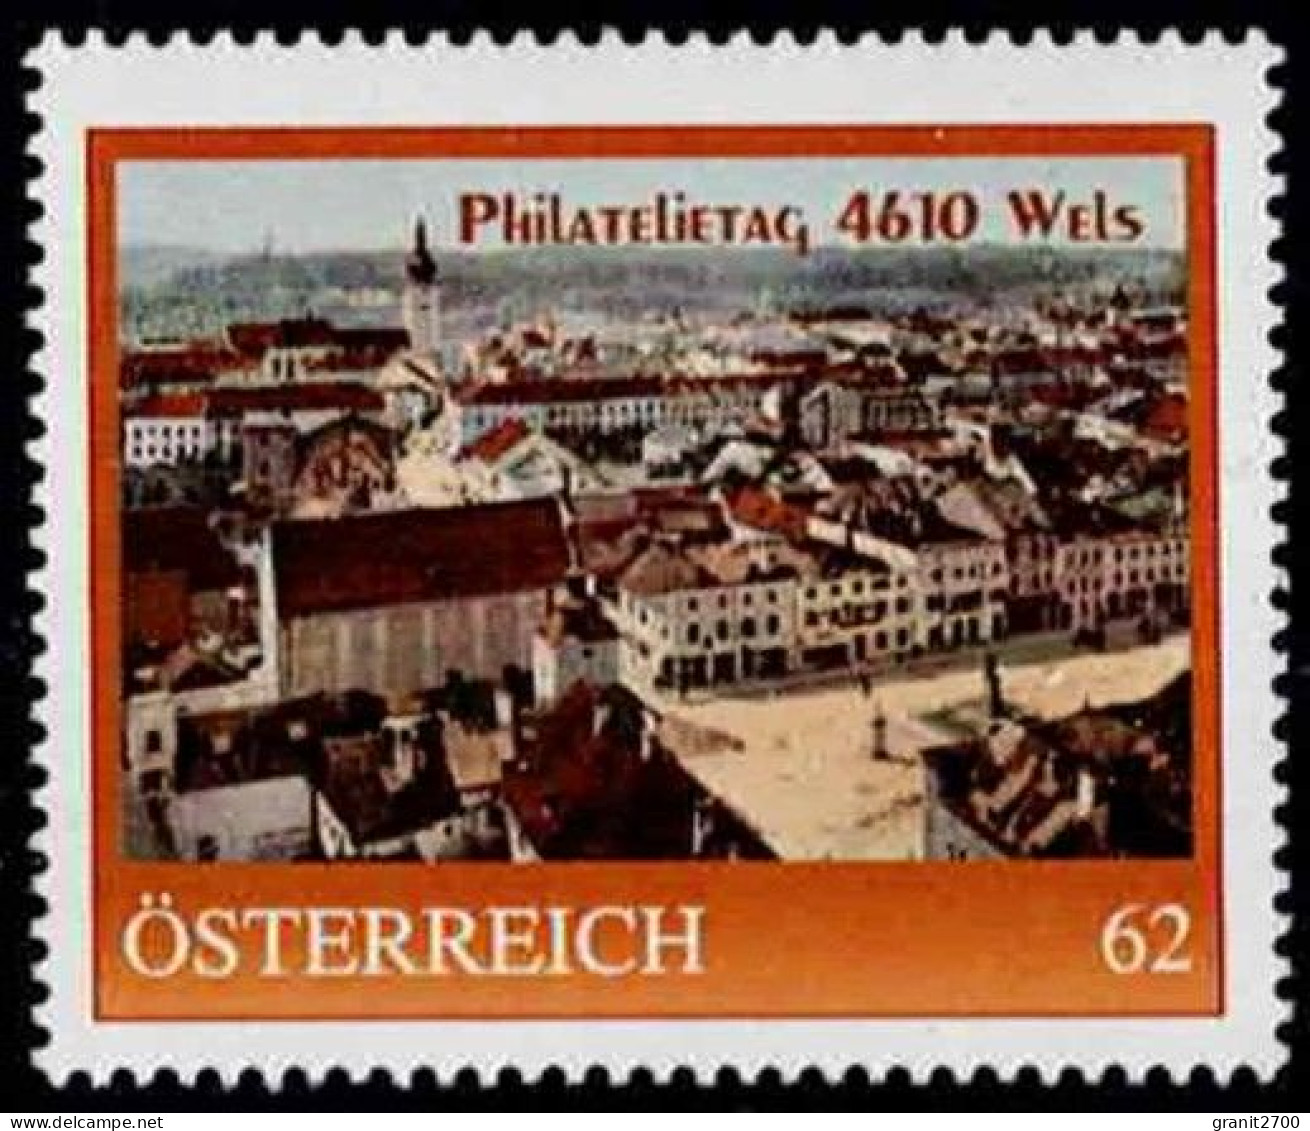 PM  Philatelietag  4610 Wels Ex Bogen Nr. 8108800  Vom 9.1.2014  Postfrisch - Personnalized Stamps